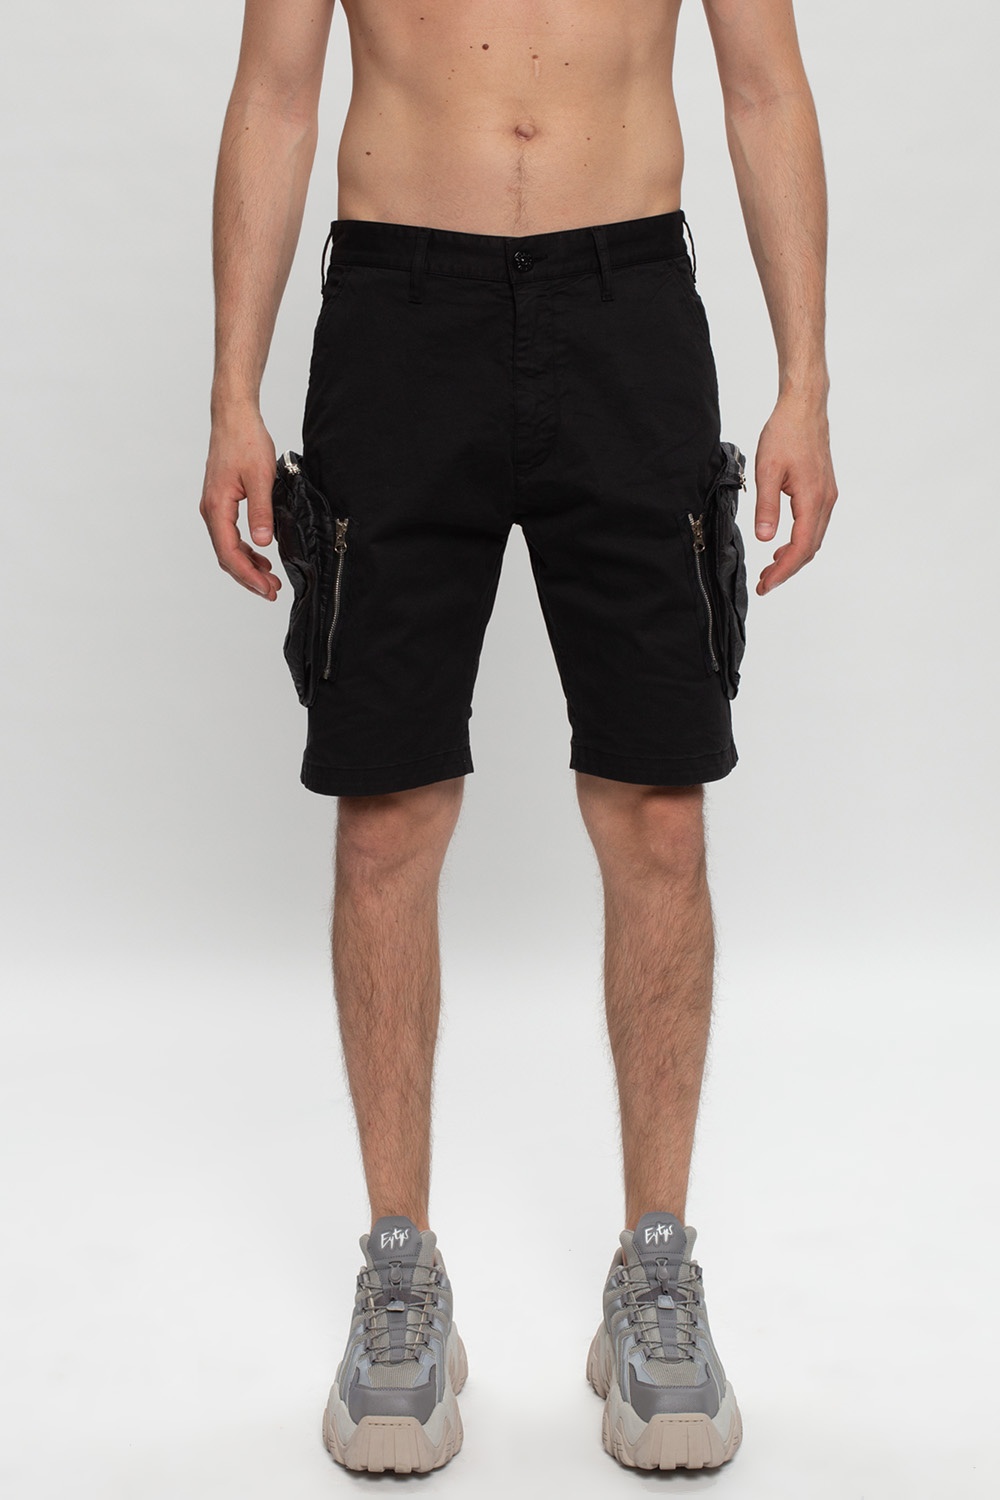 Stone Island Shorts with pockets